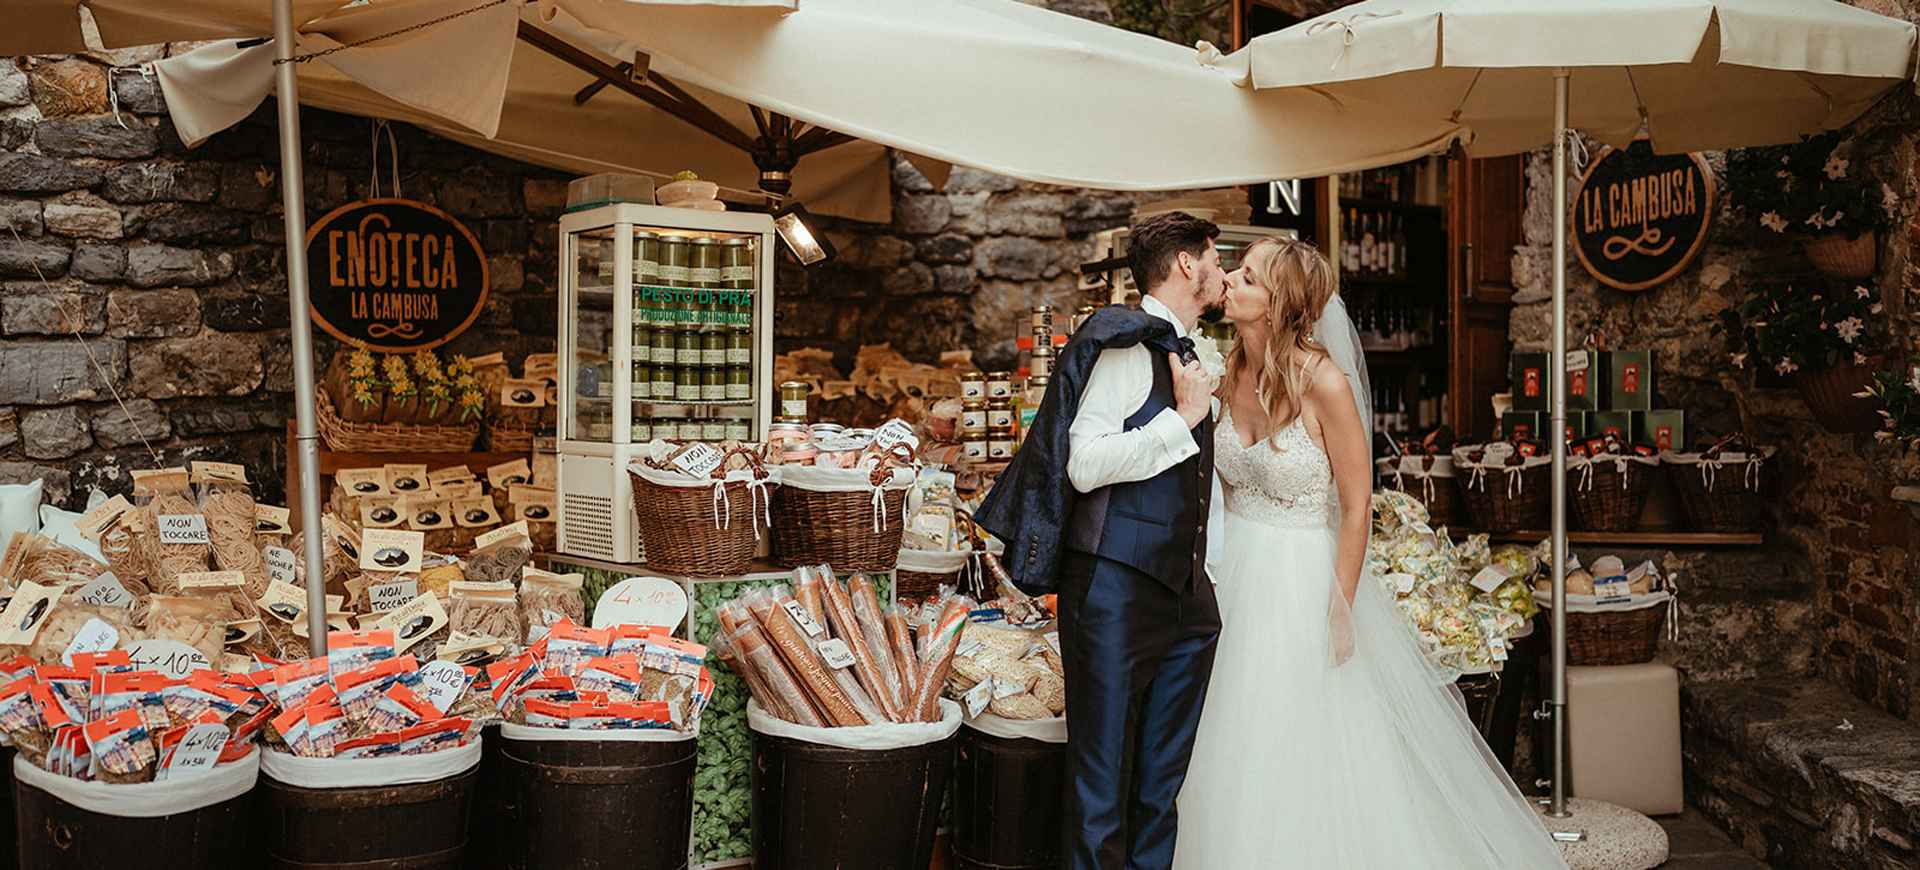 Cinque Terre Photoshoot Tour Wedding Photos in Italy 1